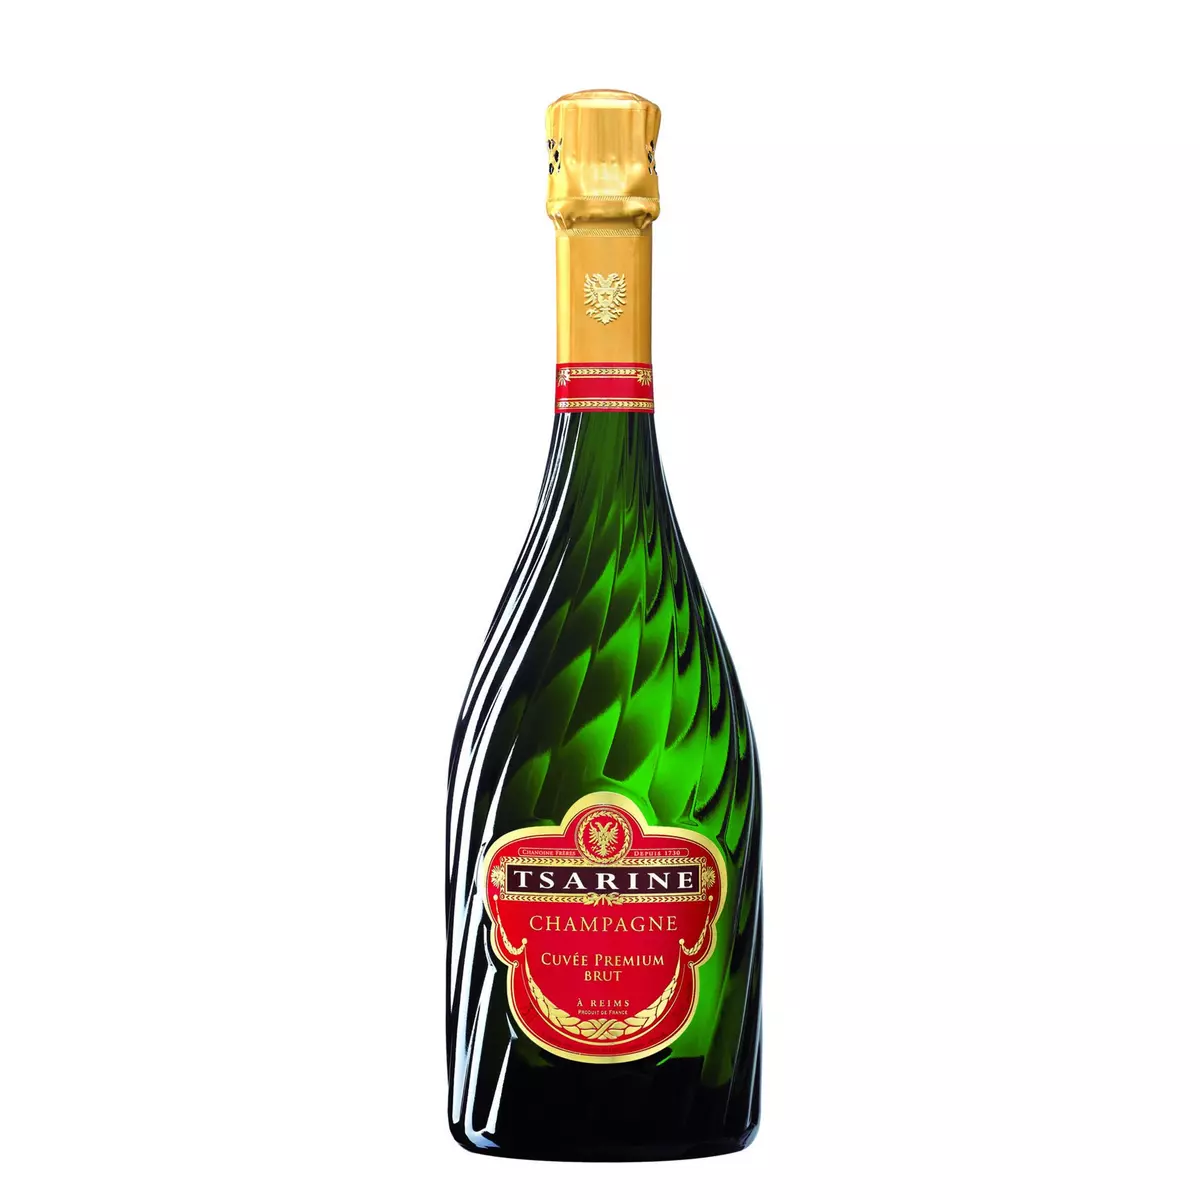 TSARINE AOP Champagne Cuvée Premium brut 75cl